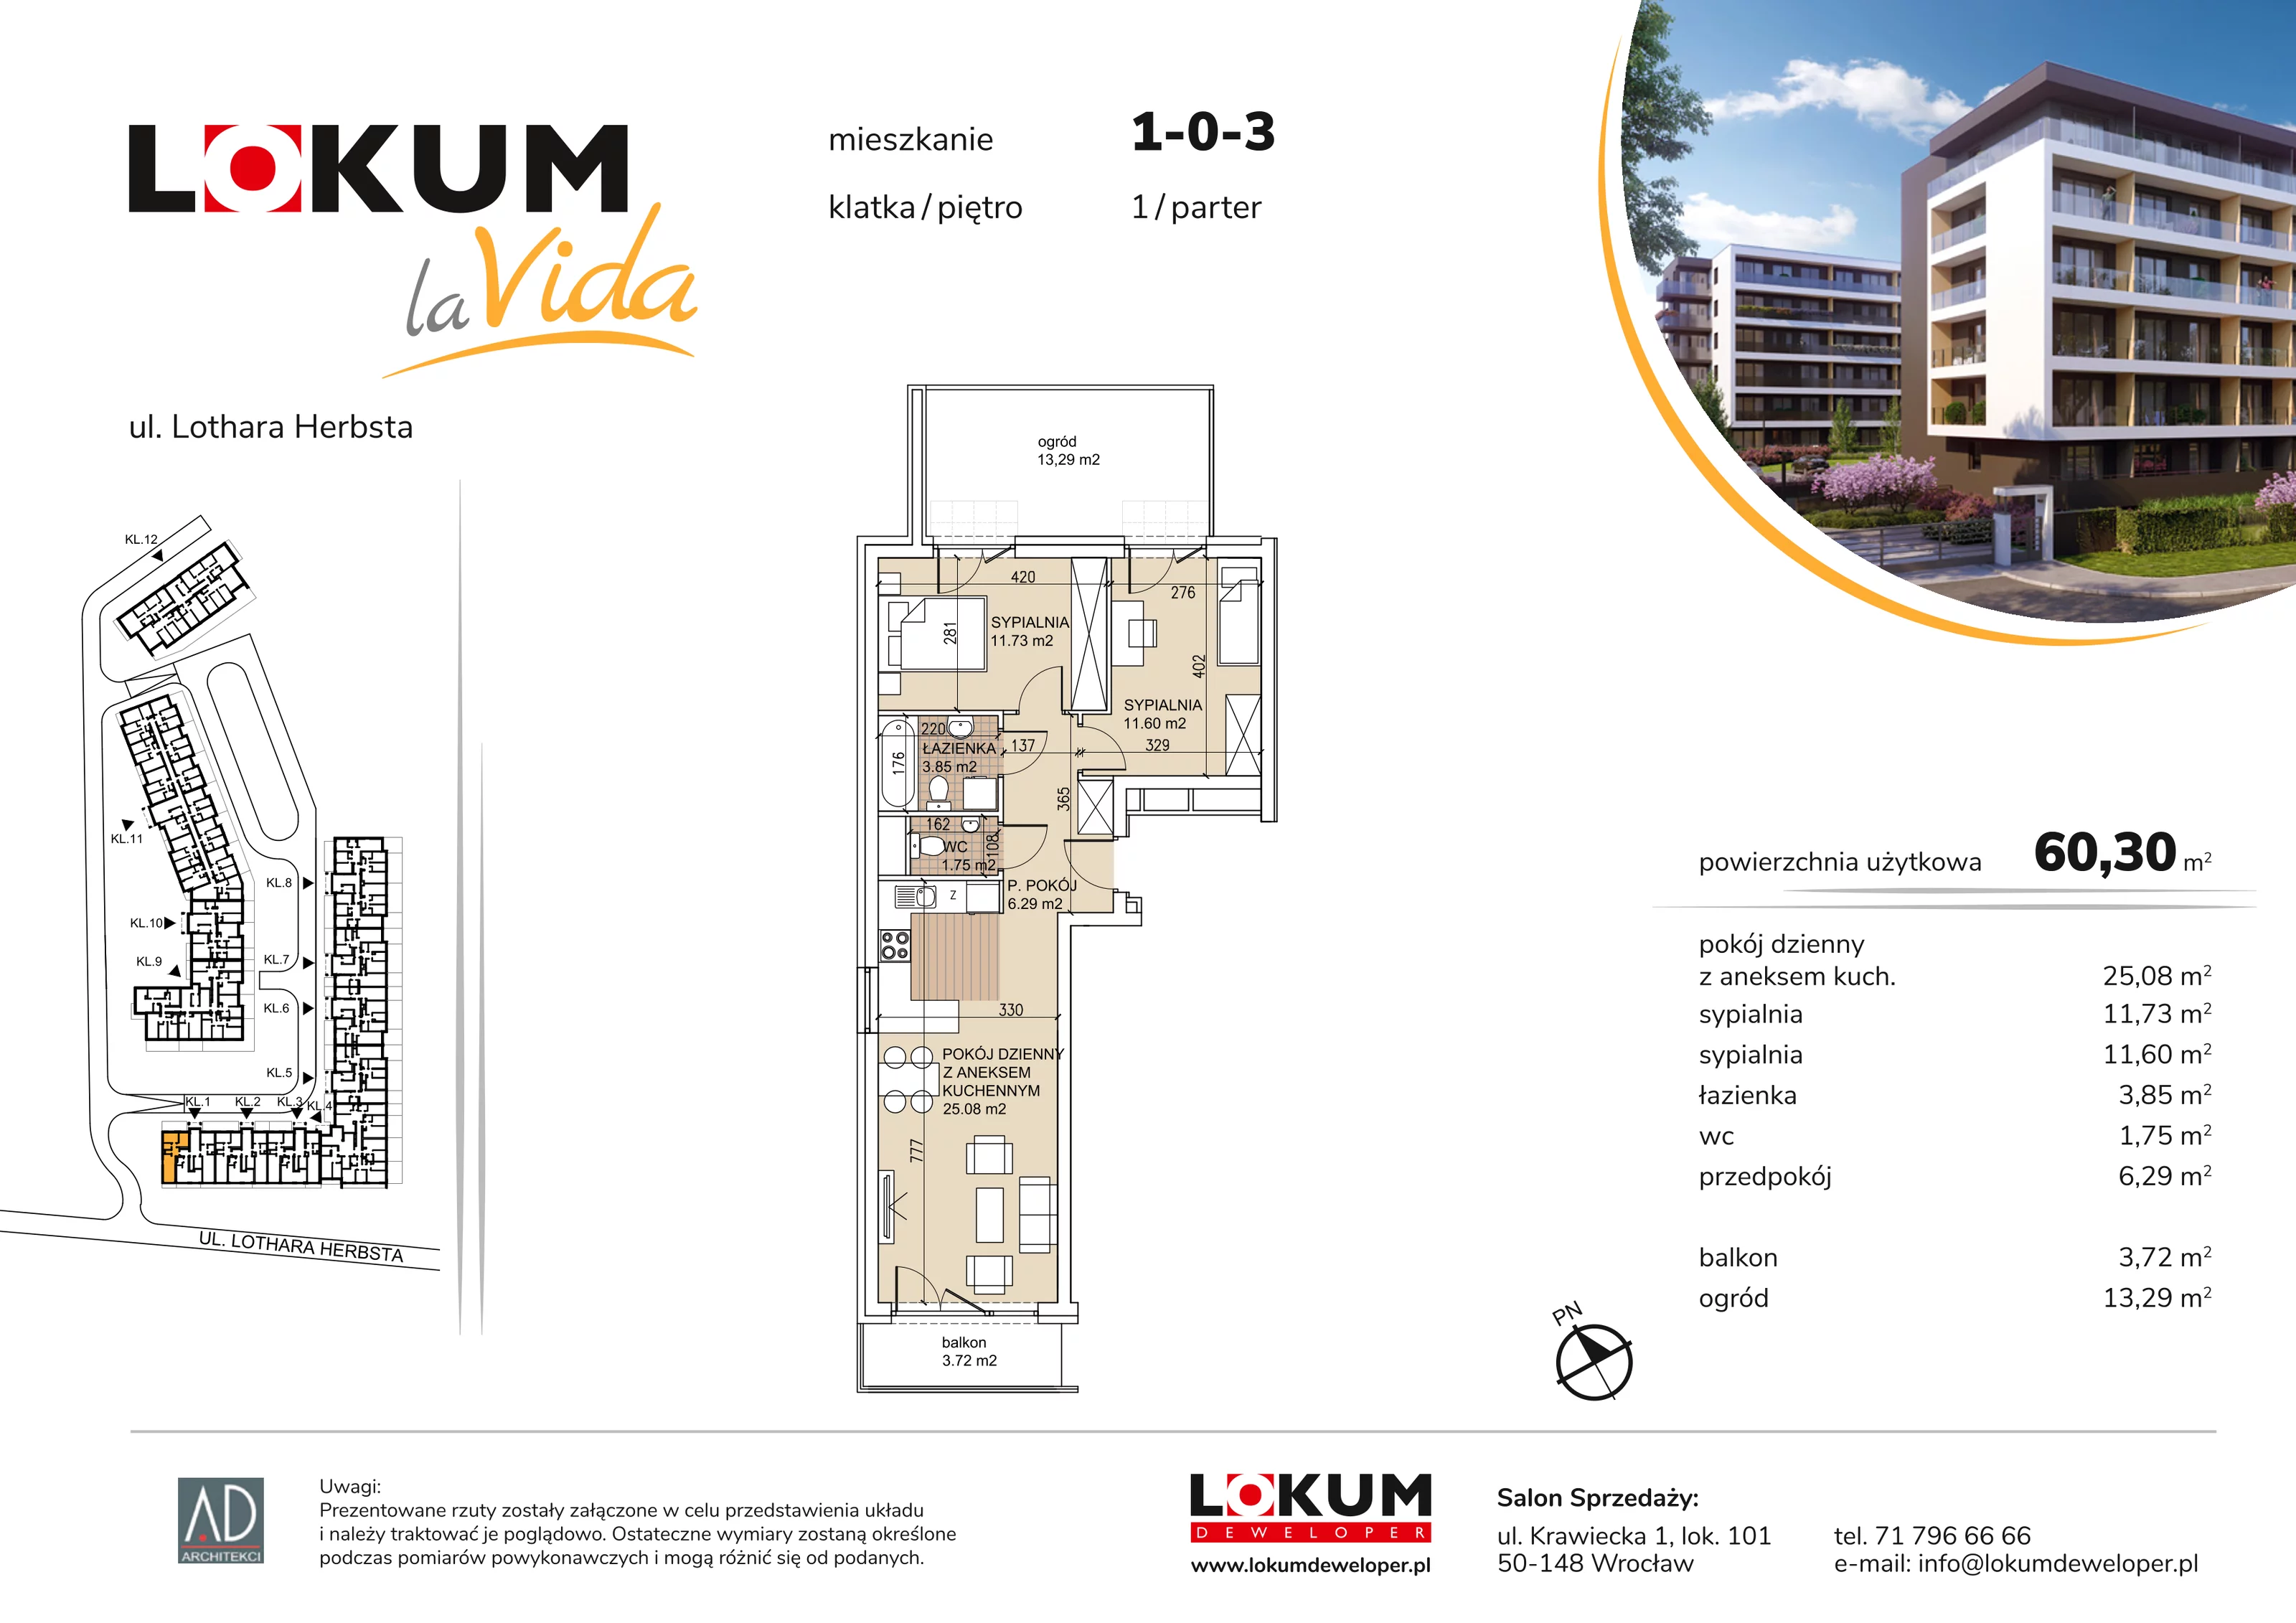 Mieszkanie 60,30 m², parter, oferta nr 1-0-3, Lokum la Vida, Wrocław, Sołtysowice, ul. Lothara Herbsta